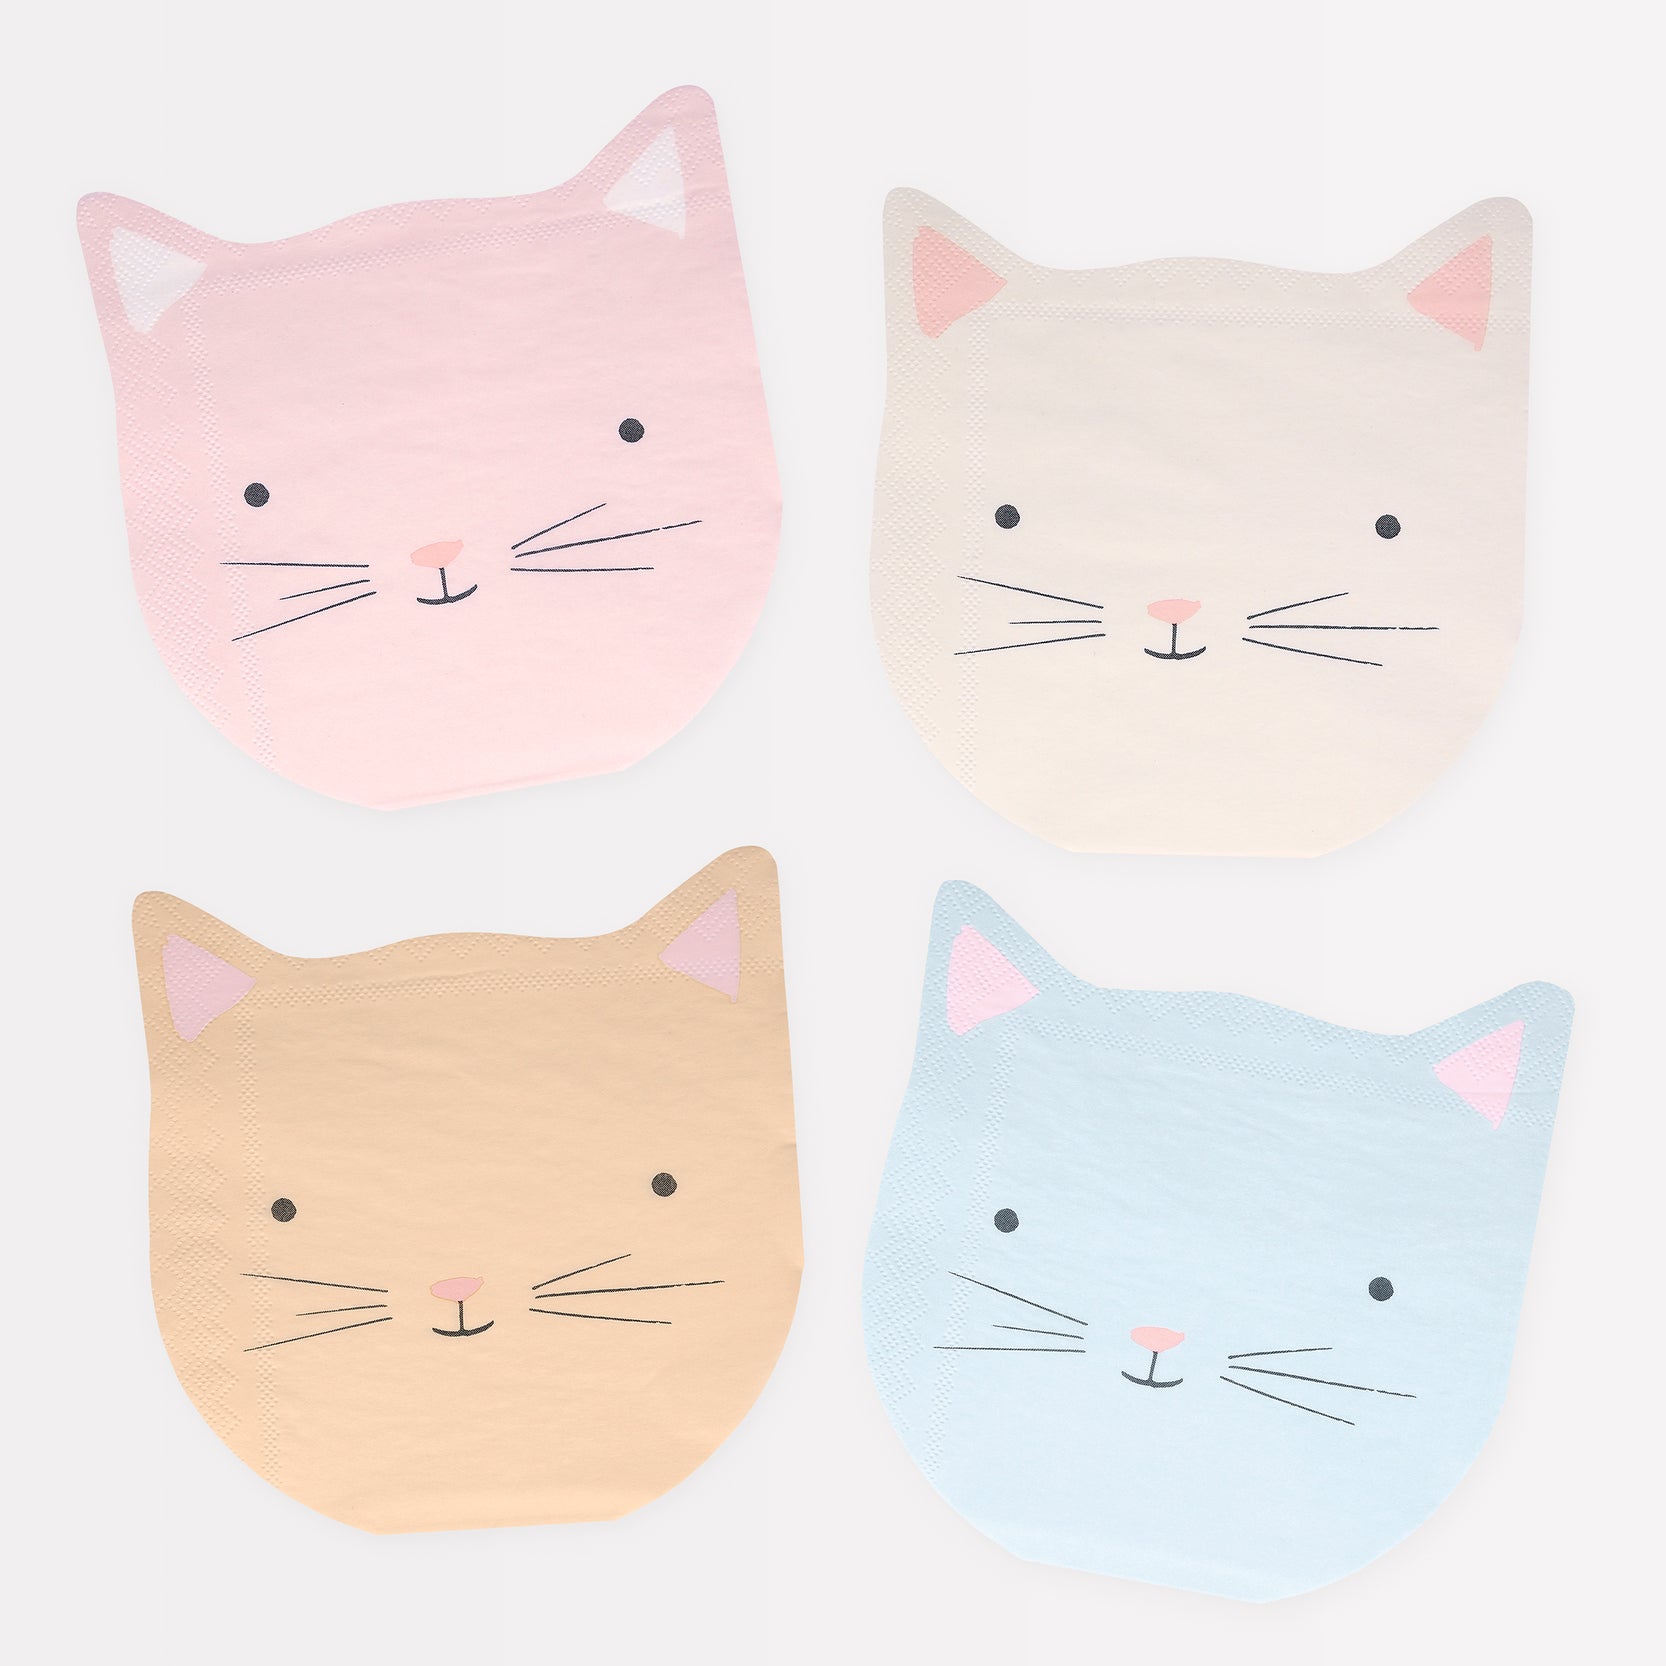 Four Meri Meri Cat Napkins designed to look like cat faces.